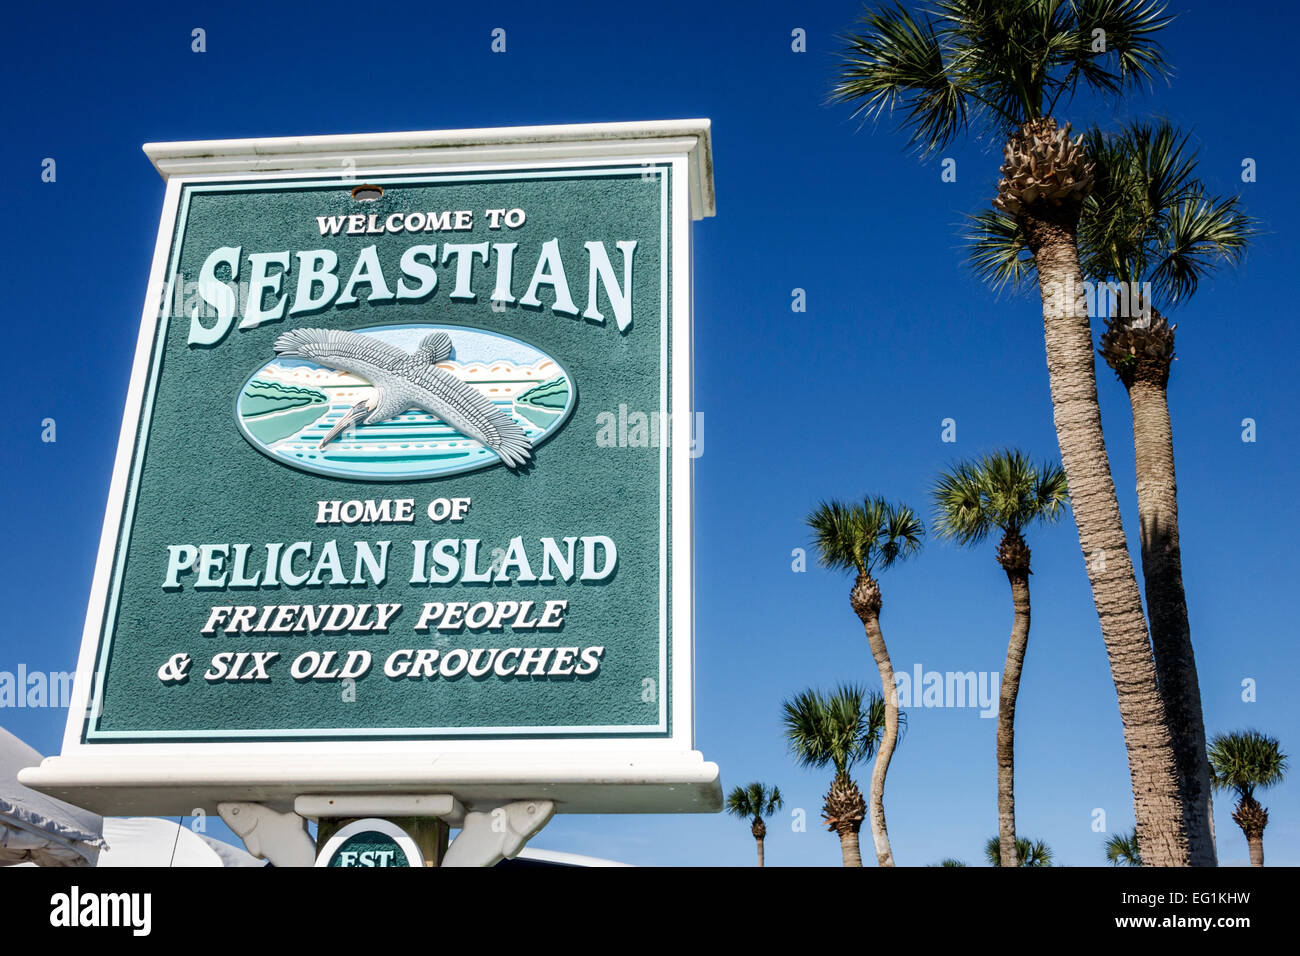 Sebastian Florida,signe,logo,bienvenue,les visiteurs Voyage tourisme touristique repère culturel, groupe de vacances personnes personne sc Banque D'Images